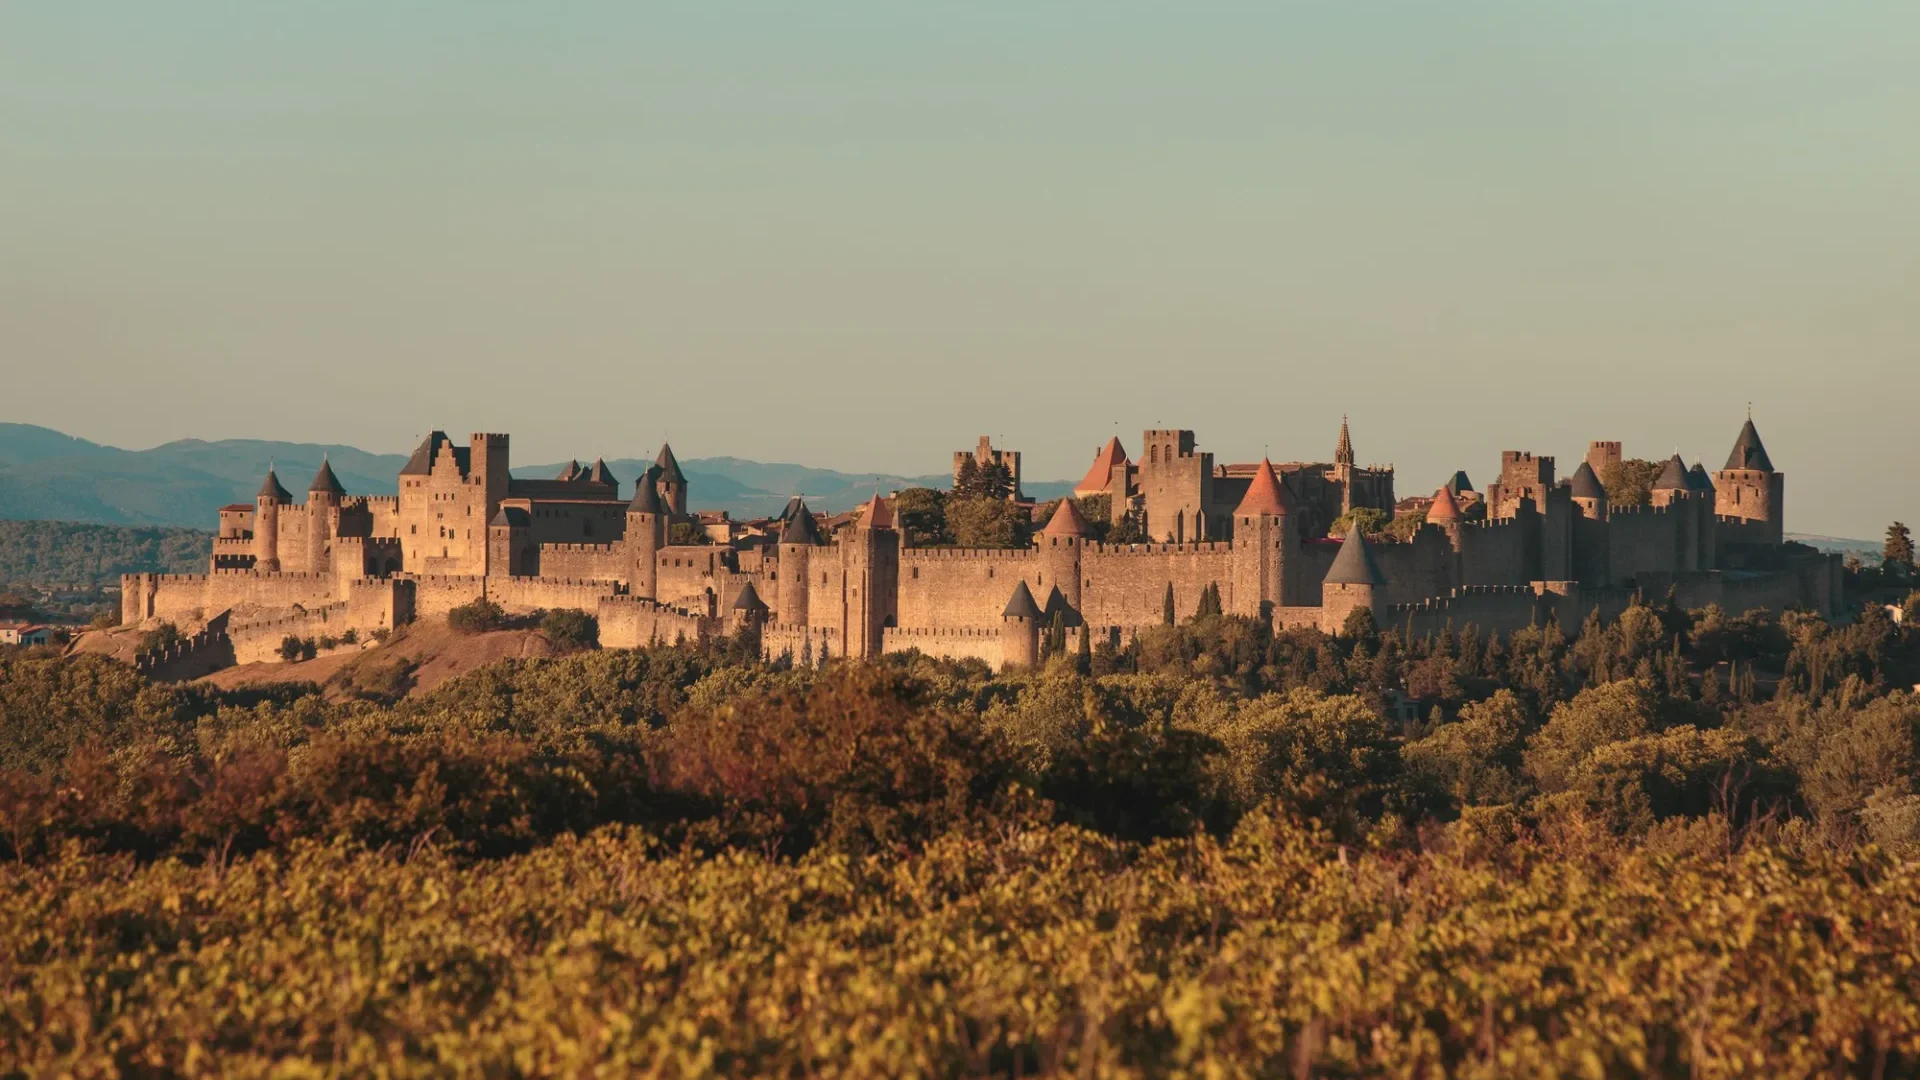 La cité de Carcassonne vue de loin, automne